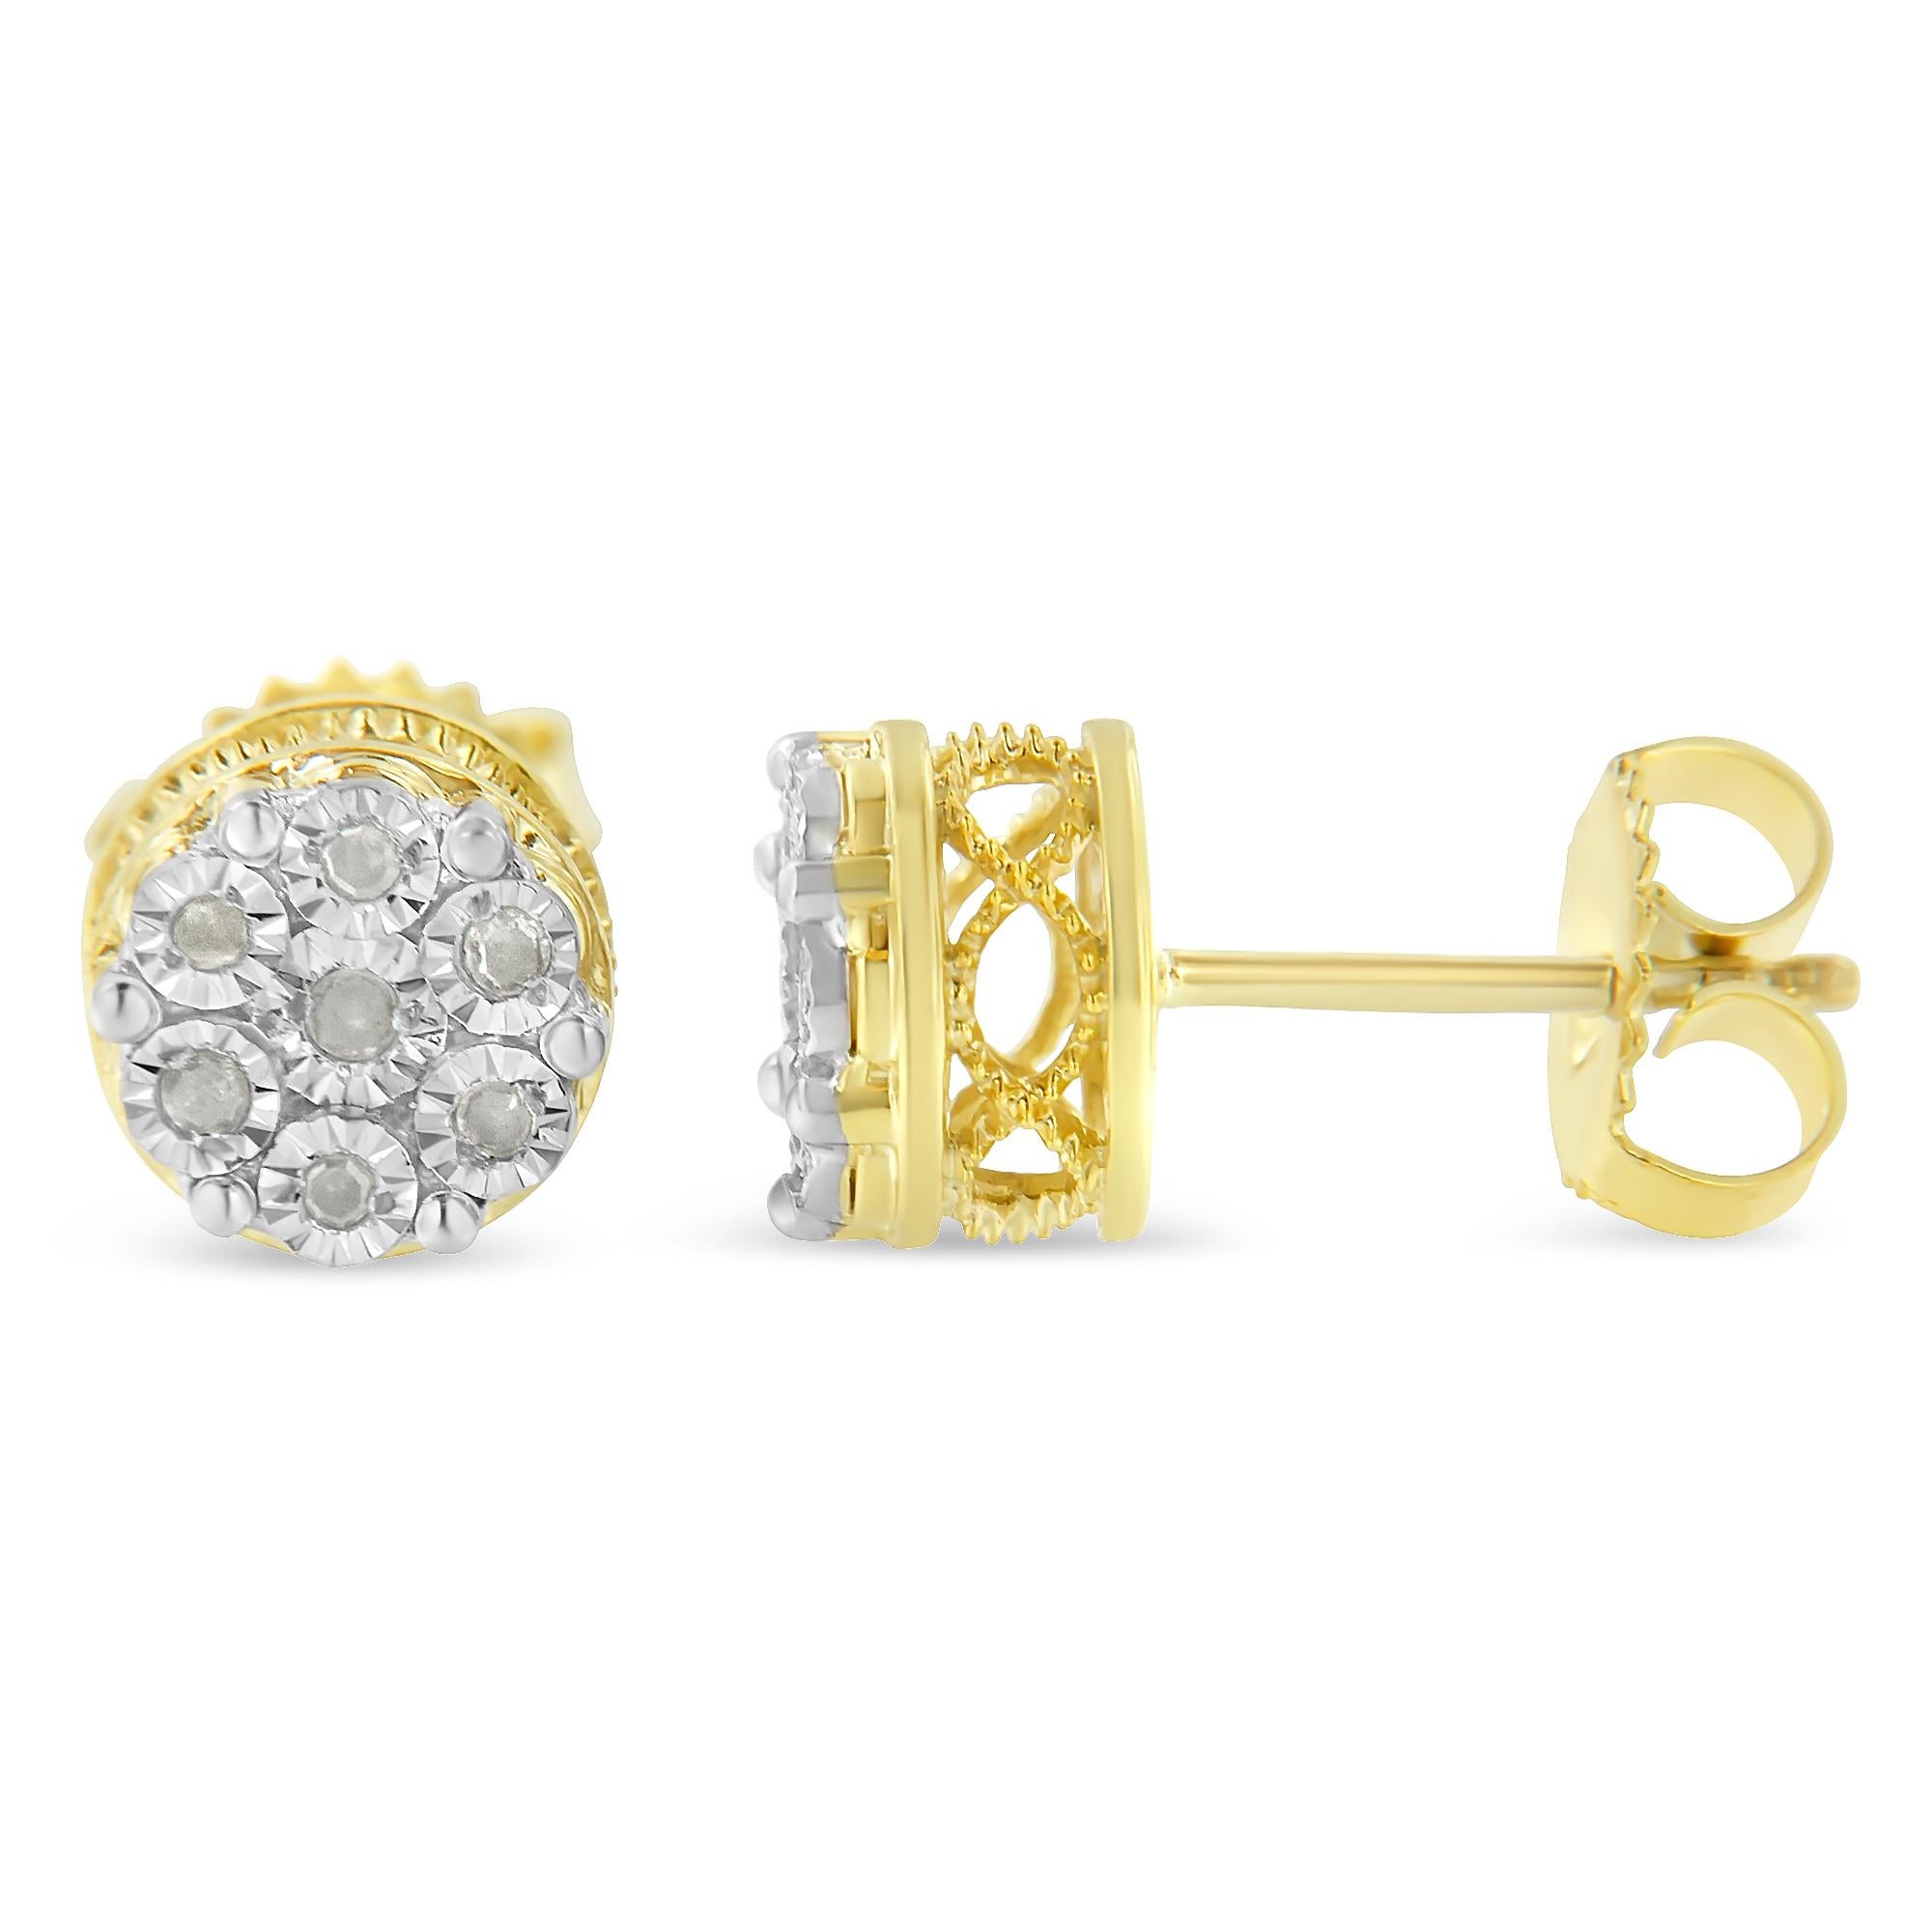 Diese auffälligen Cluster-Diamant-Ohrringe sind in 14k Gelbgold plattiert Sterling Silber und verfügen über 1/7ct TDW von Promo-Qualität runden Diamanten geschnitten. Jeder Ohrring ist mit 7 schimmernden Diamanten besetzt, die eine blumenförmige